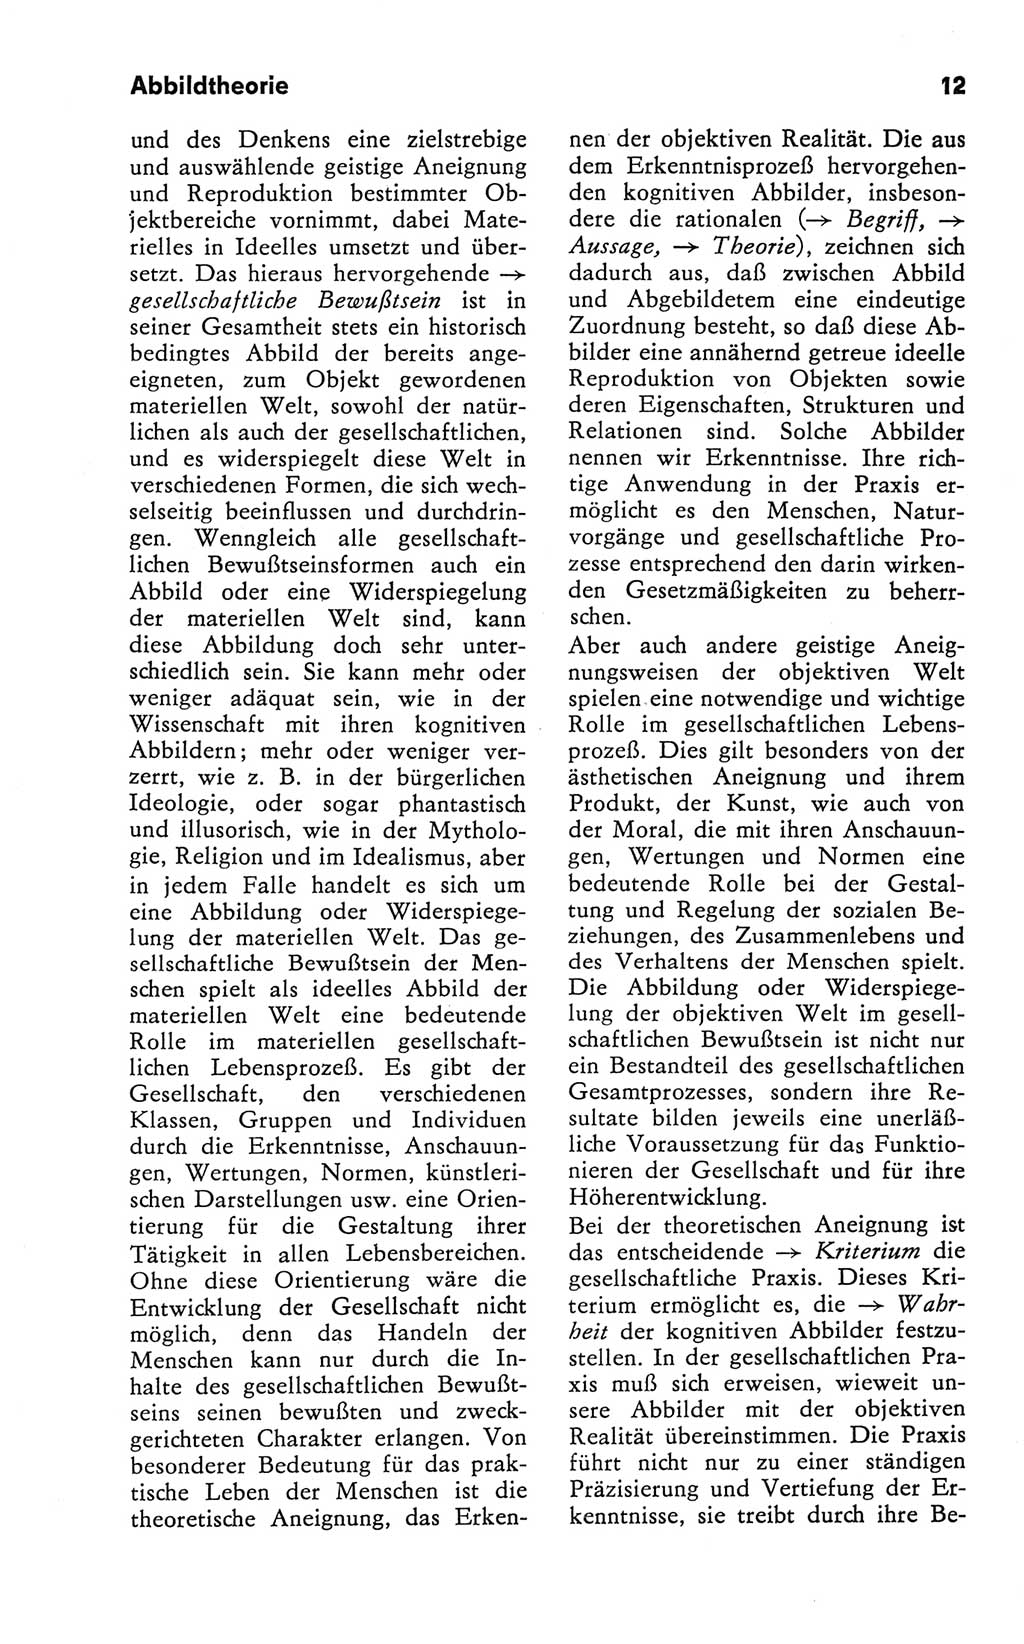 Kleines Wörterbuch der marxistisch-leninistischen Philosophie [Deutsche Demokratische Republik (DDR)] 1981, Seite 12 (Kl. Wb. ML Phil. DDR 1981, S. 12)